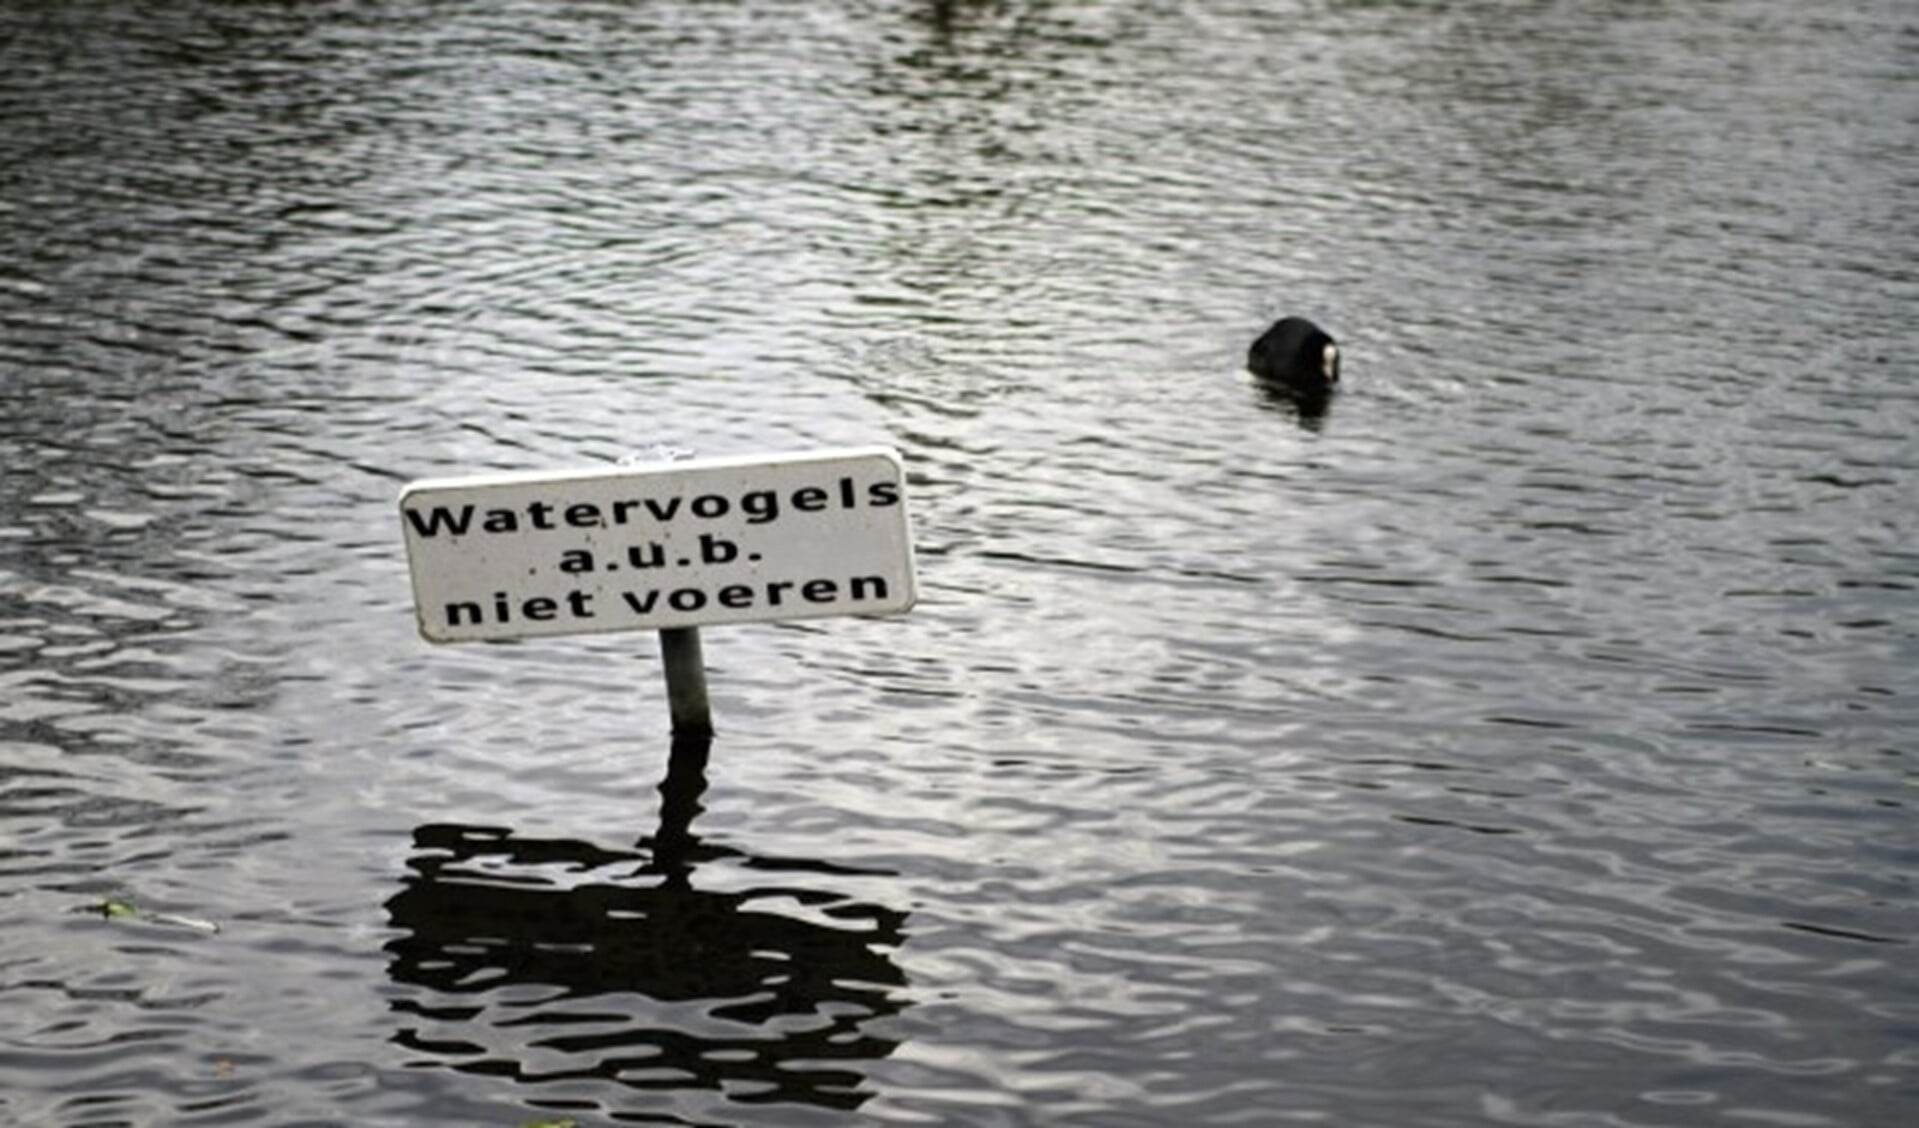 De gemeente probeert o.a. door het plaatsen van borden het voeren van watervogels te ontmoedigen. Foto; Robbert Roos